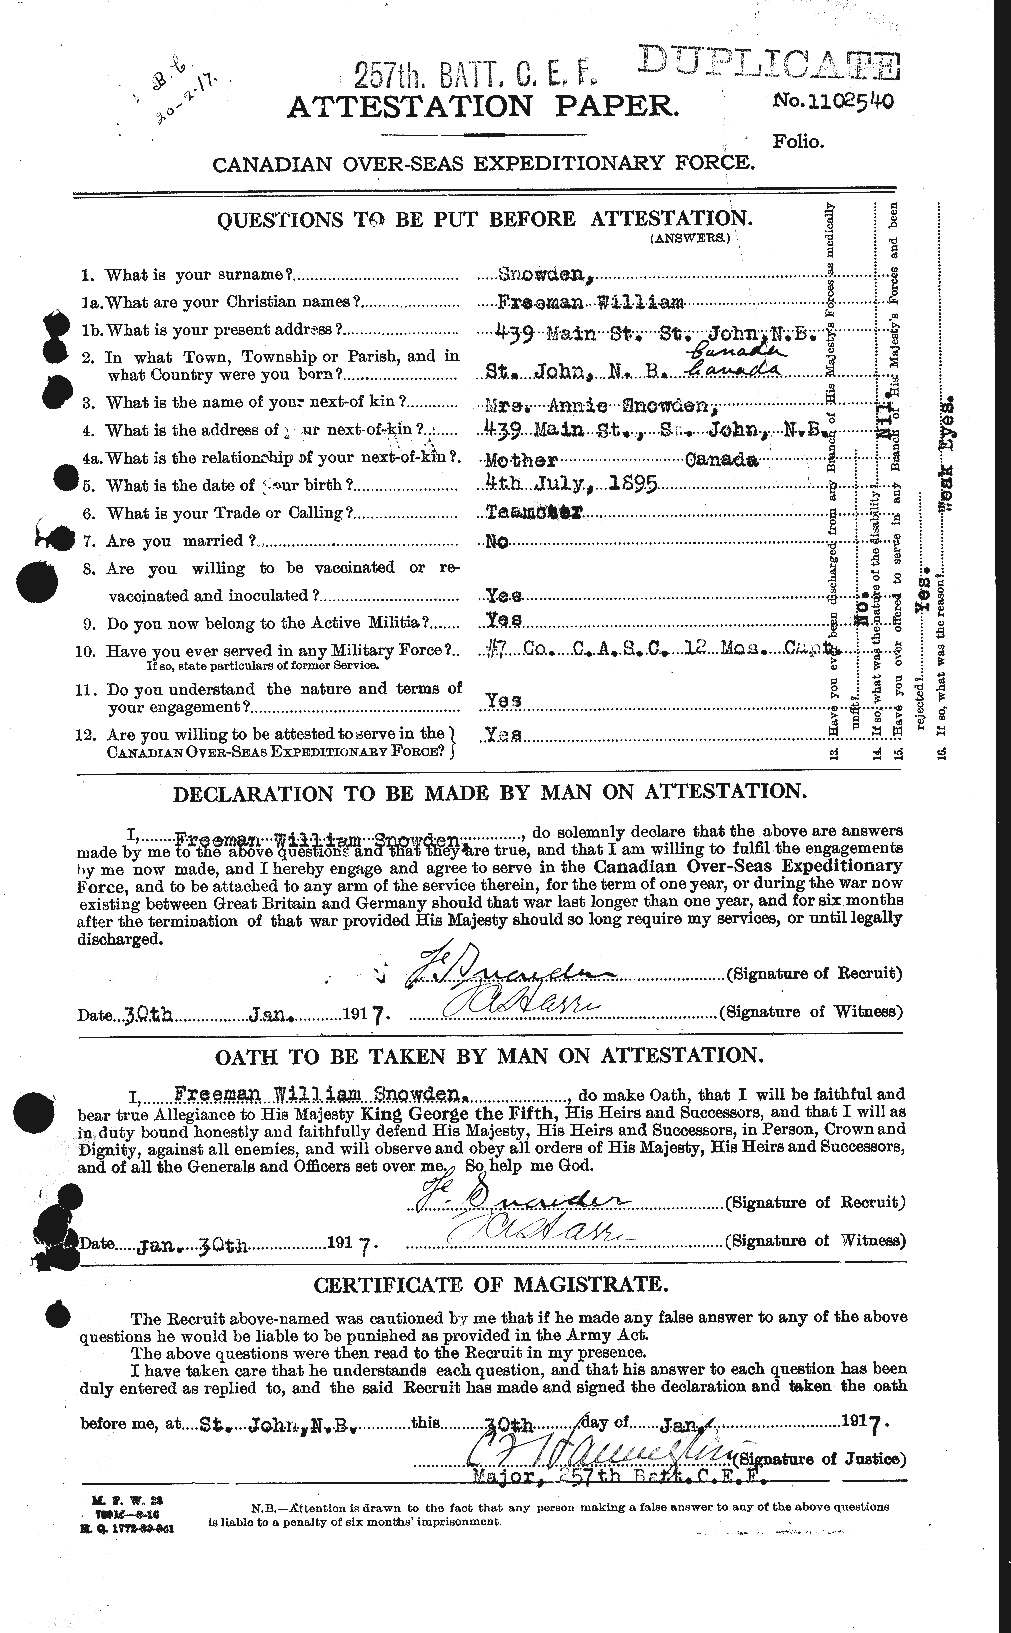 Dossiers du Personnel de la Première Guerre mondiale - CEC 109491a